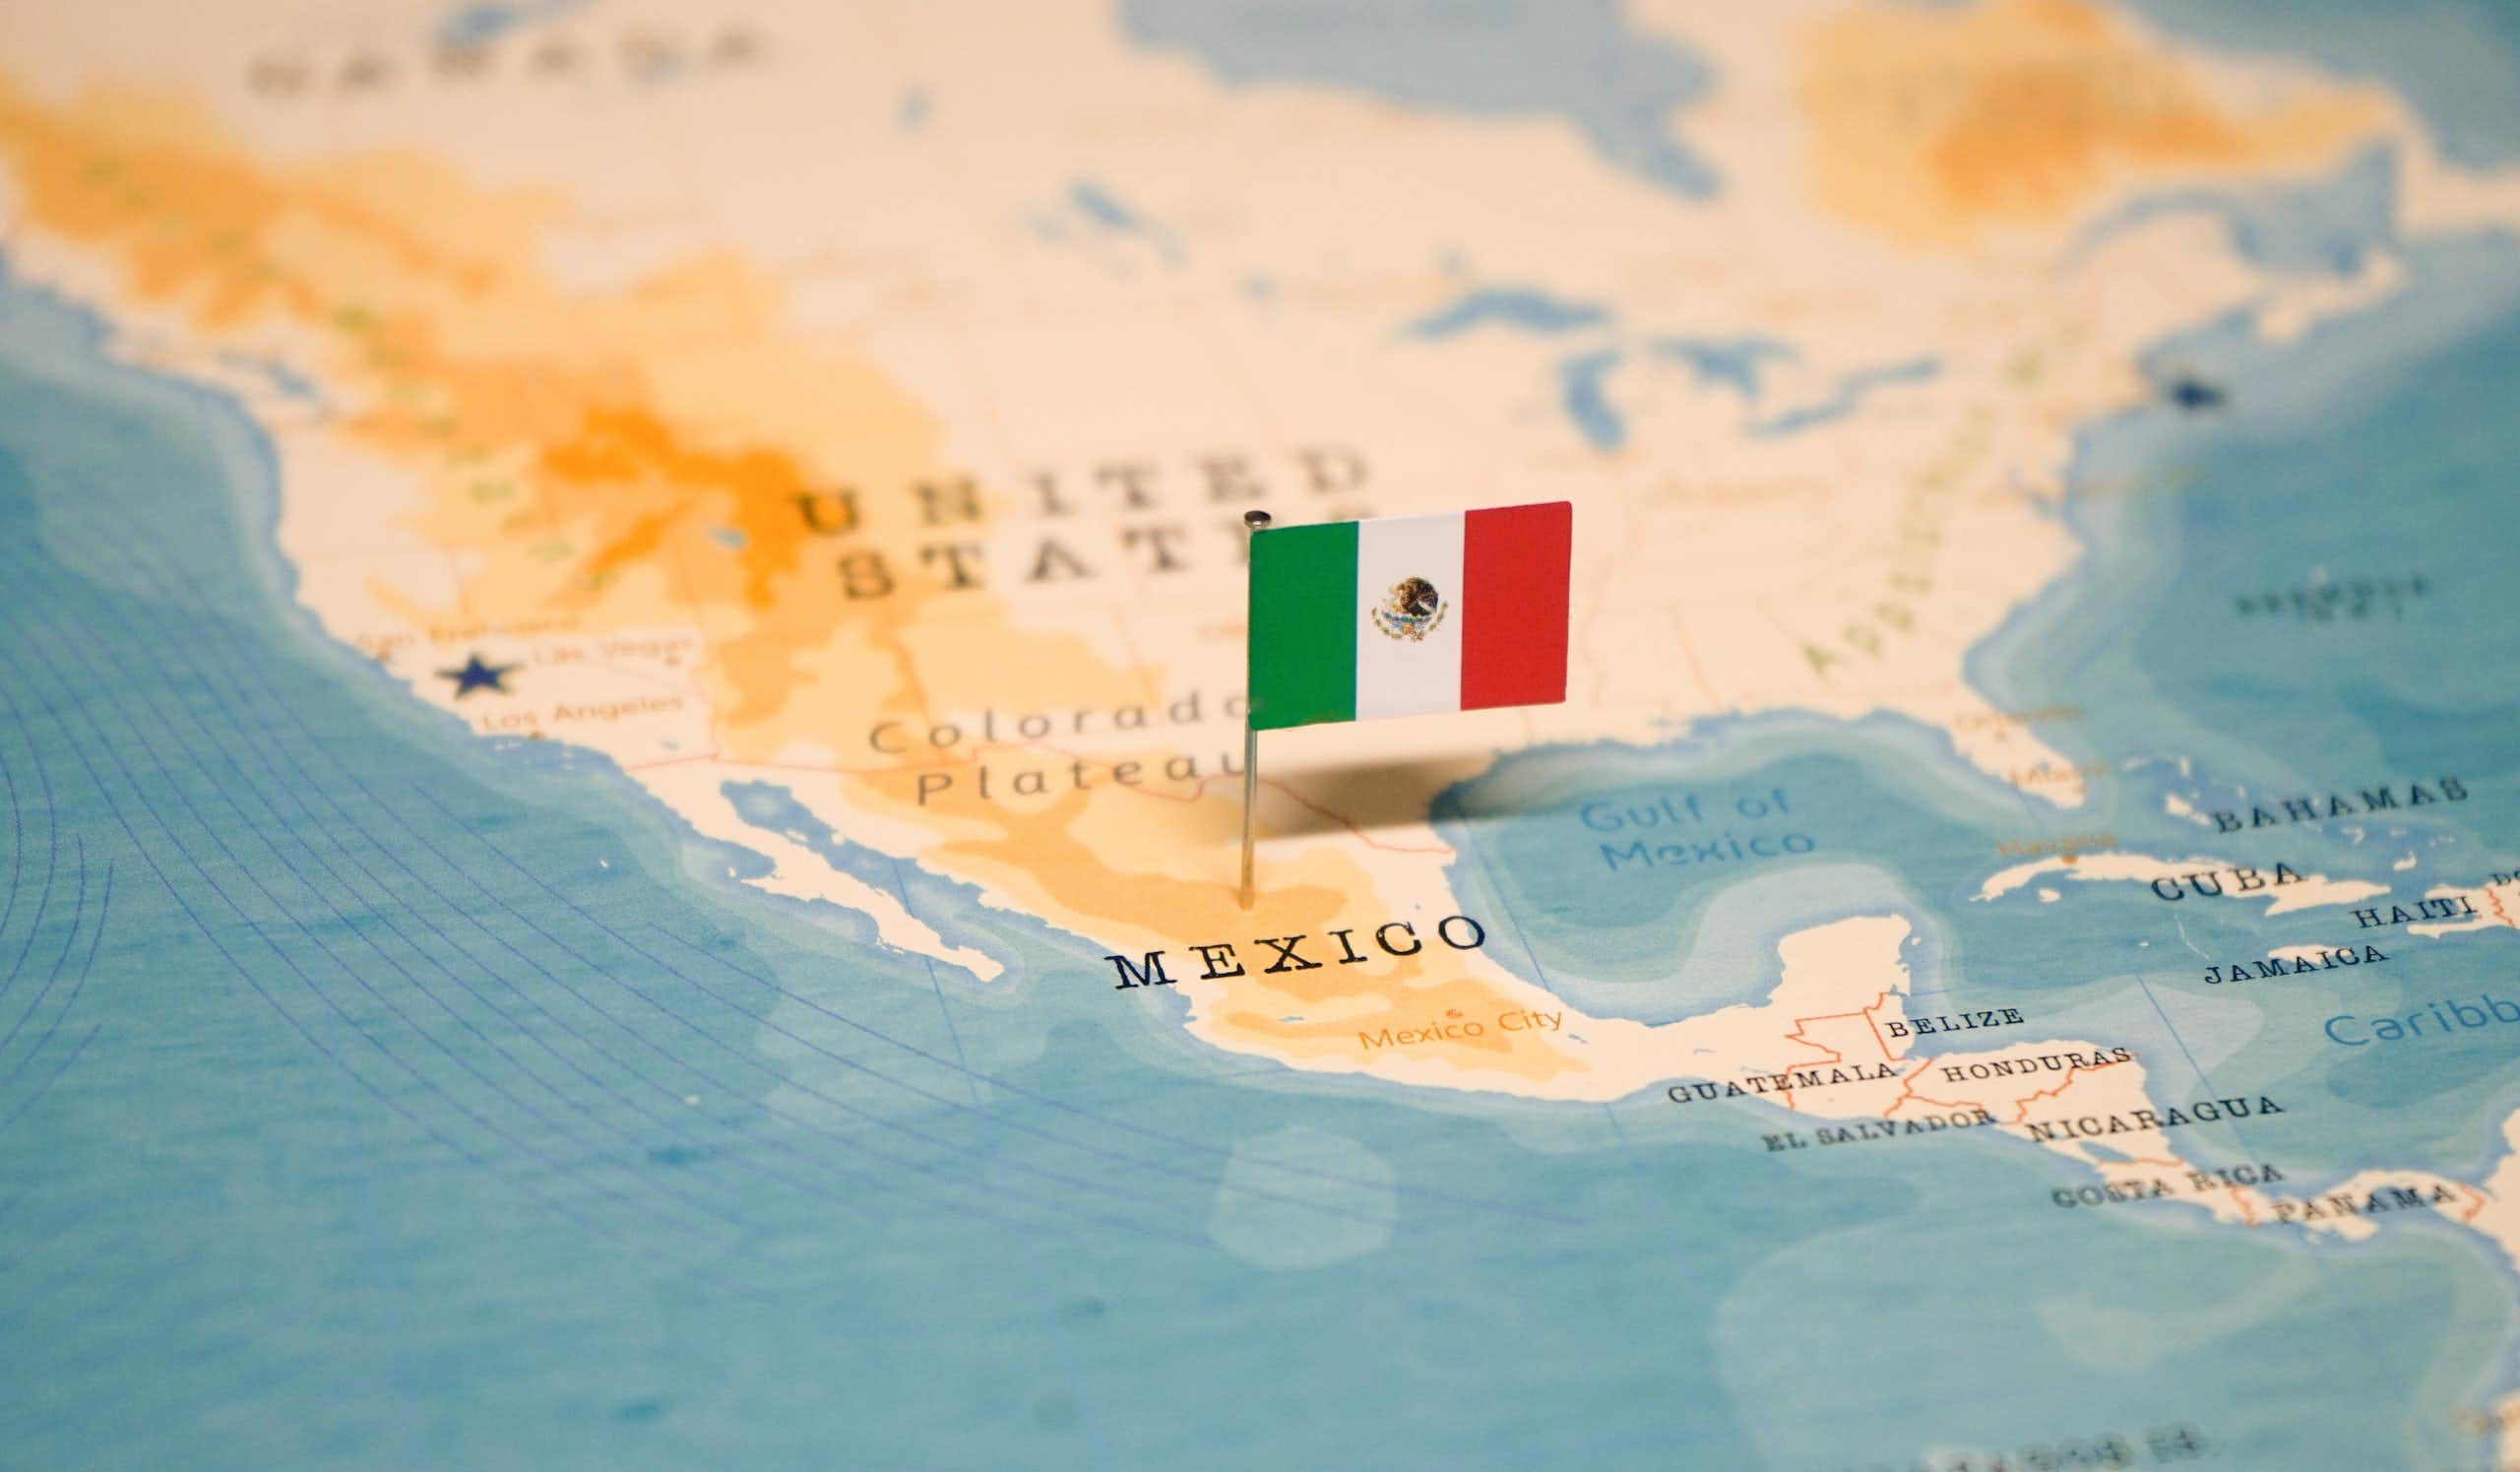 ¿Por qué escribimos México, pero decimos Méjico? La relación de la grafía x con la pronunciación de la jota